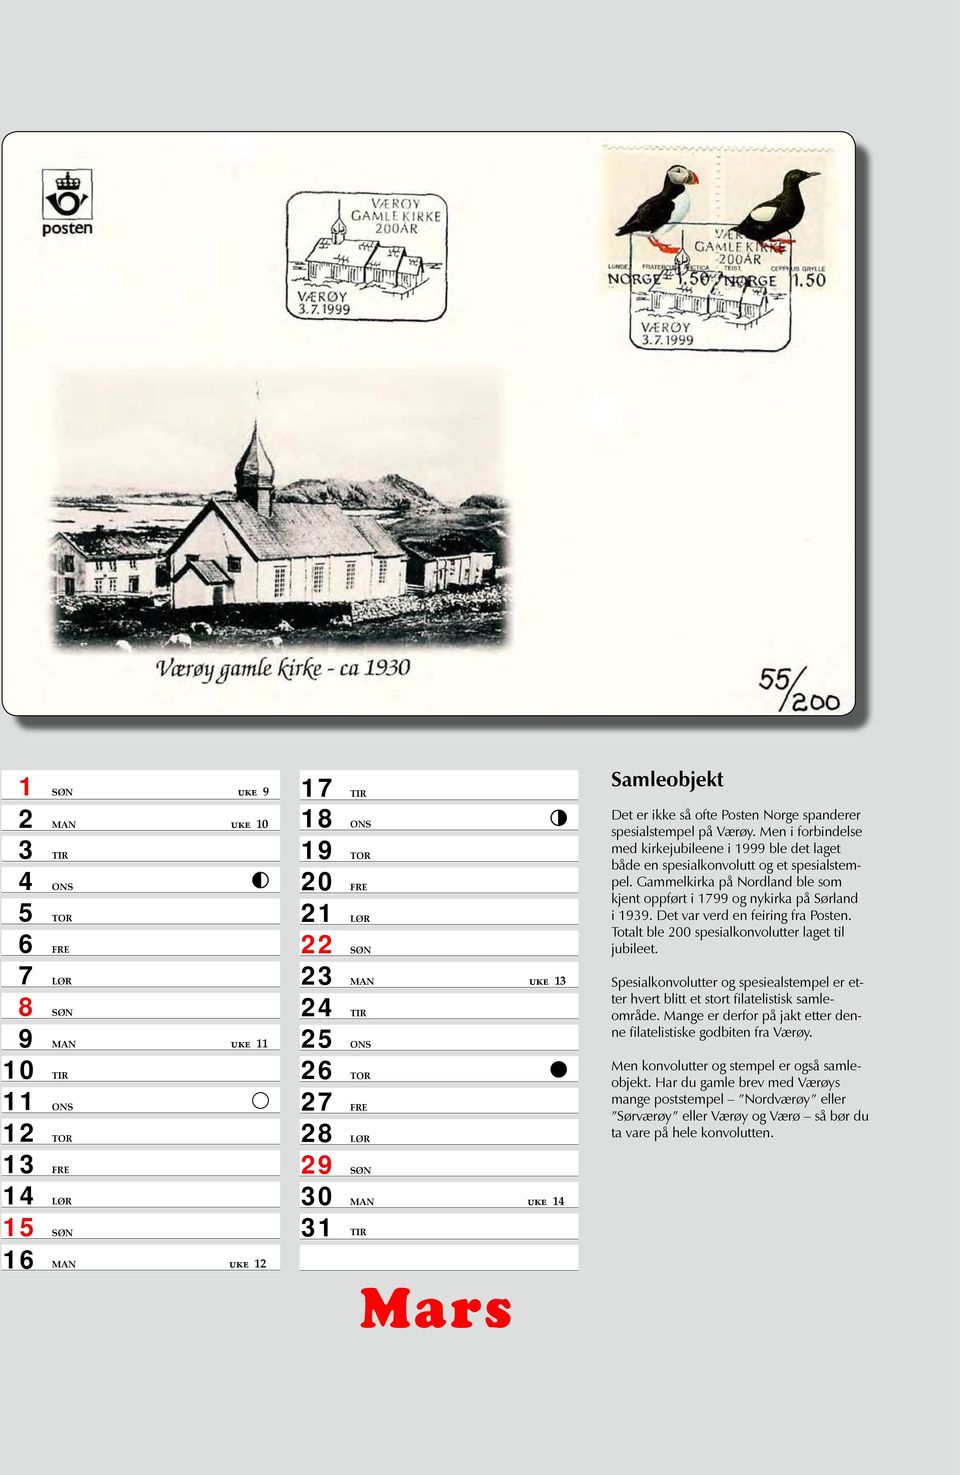 Men i forbindelse med kirkejubileene i 1999 ble det laget både en spesialkonvolutt og et spesialstempel. Gammelkirka på Nordland ble som kjent oppført i 1799 og nykirka på Sørland i 1939.